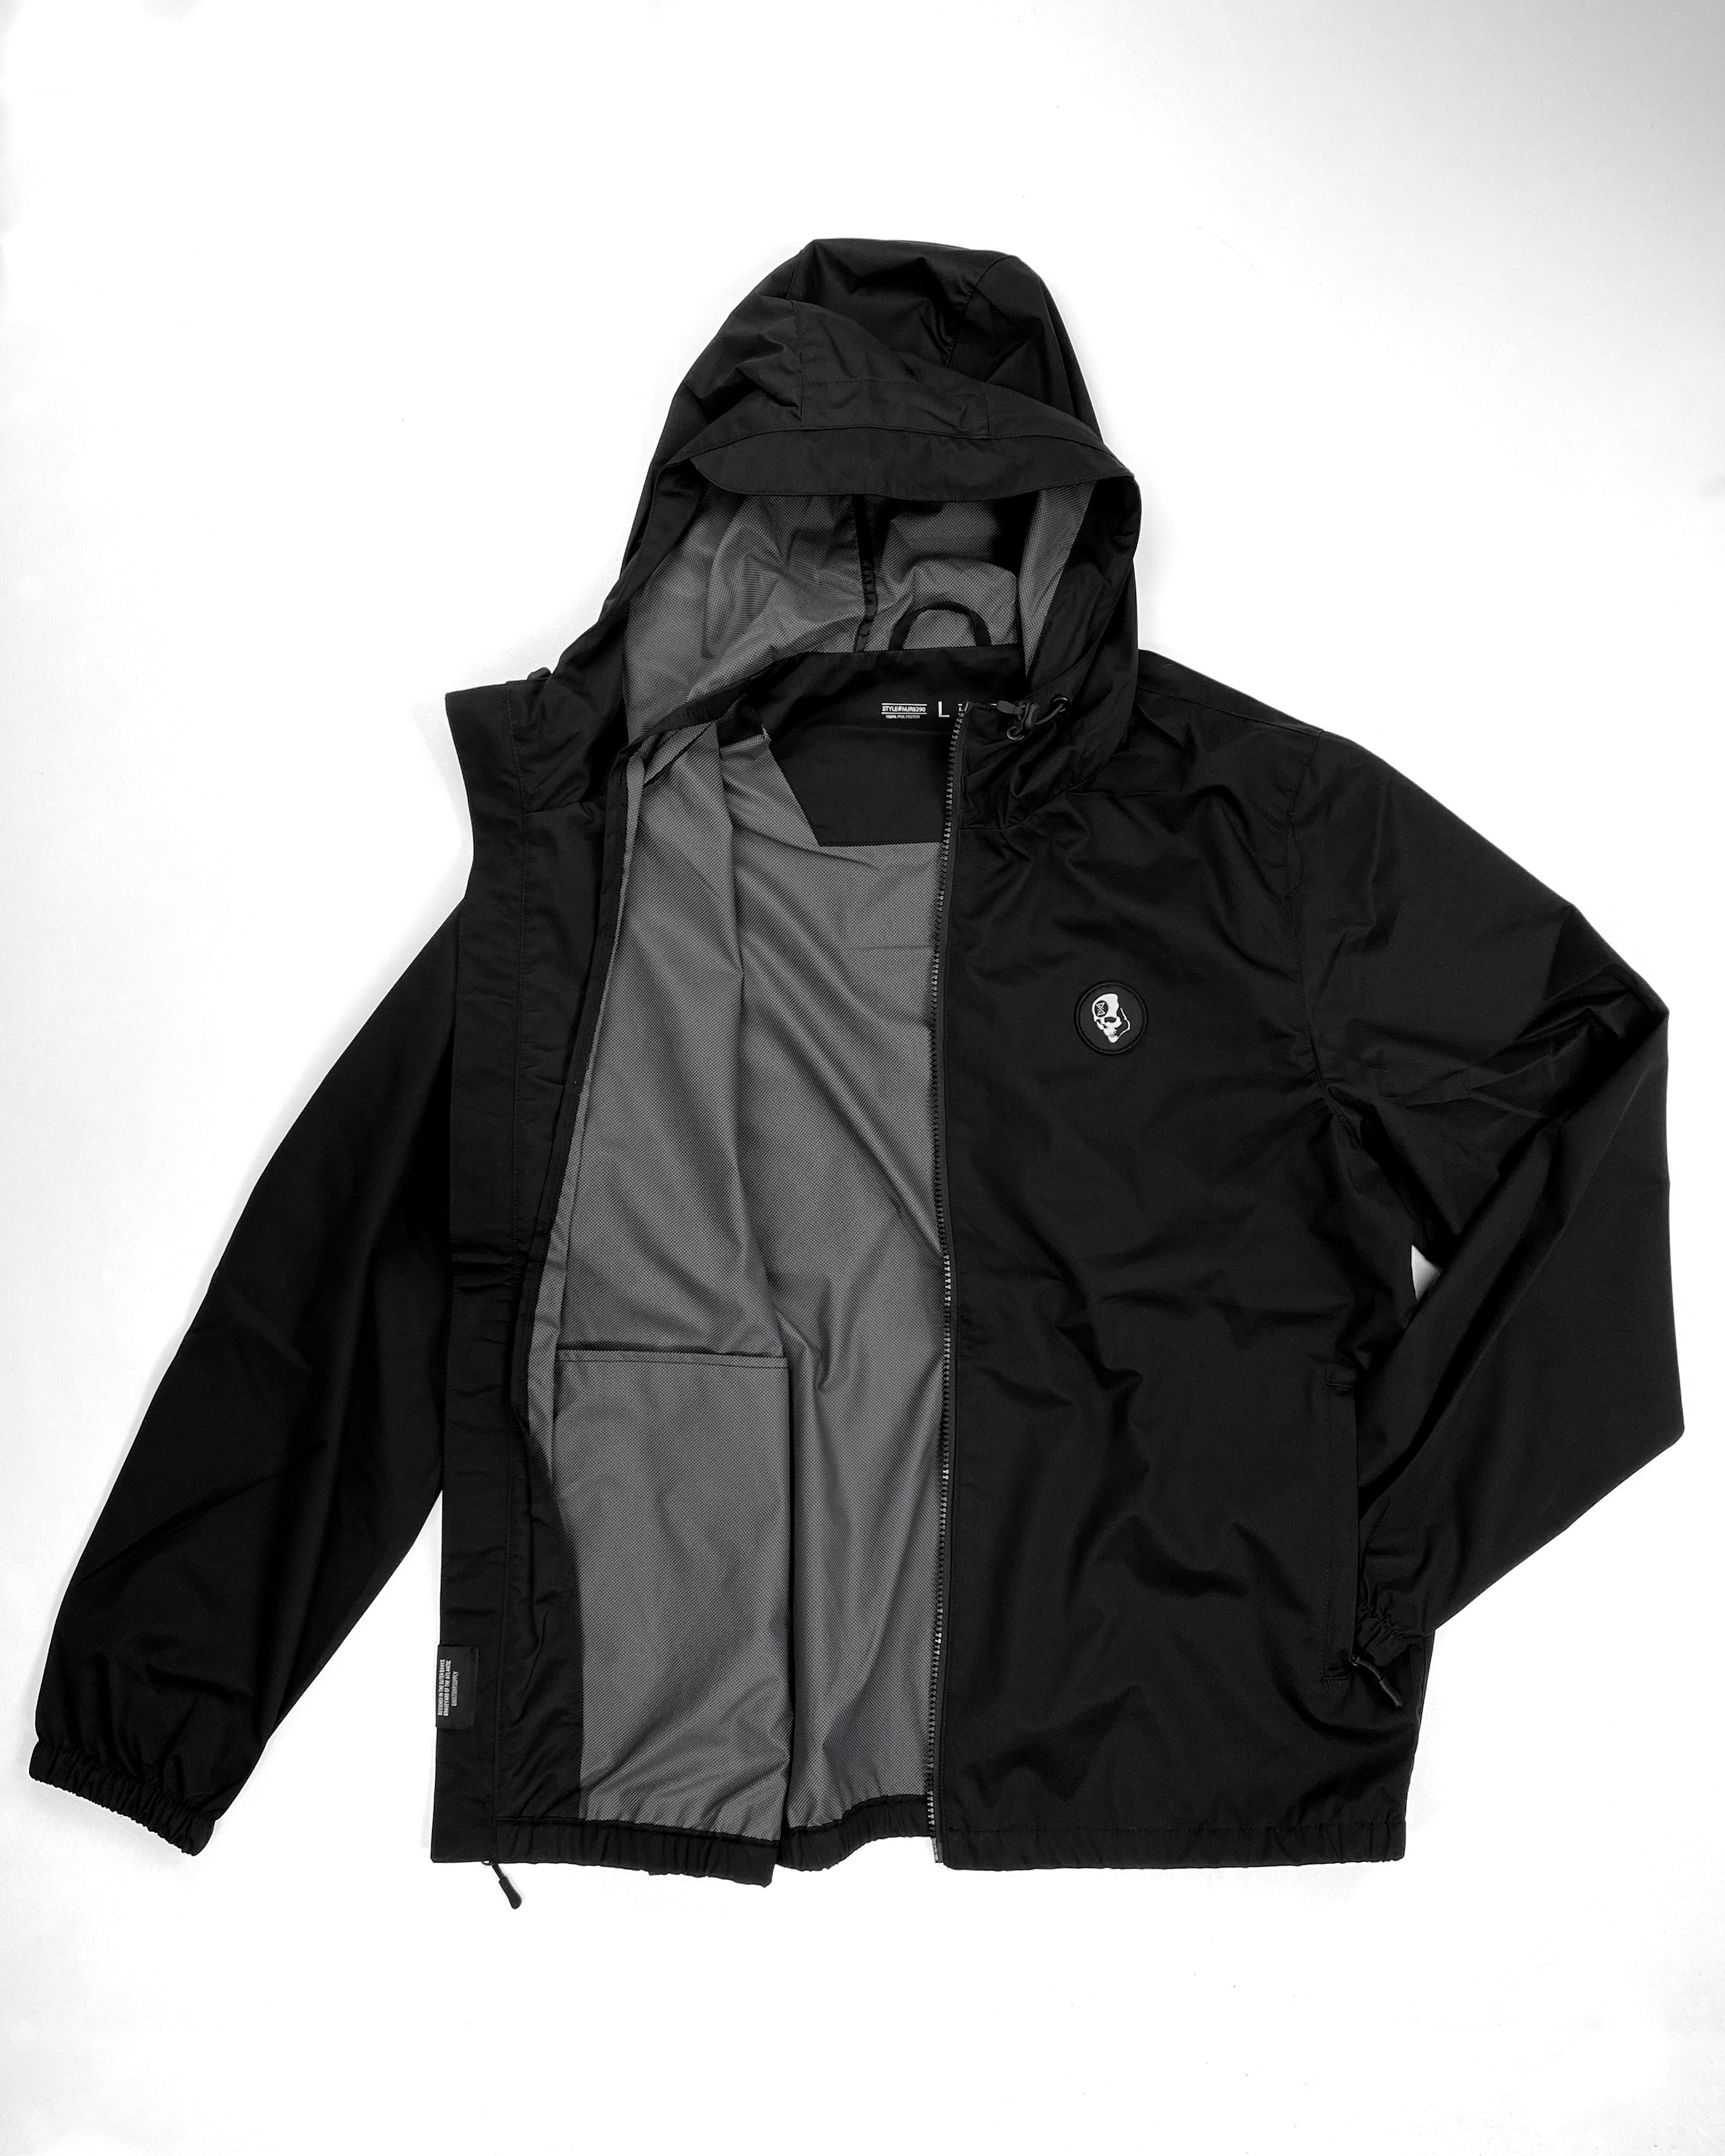 Hybrid Hooded Zip-Up Jacket - Black - GHOSTSHIP.Supply